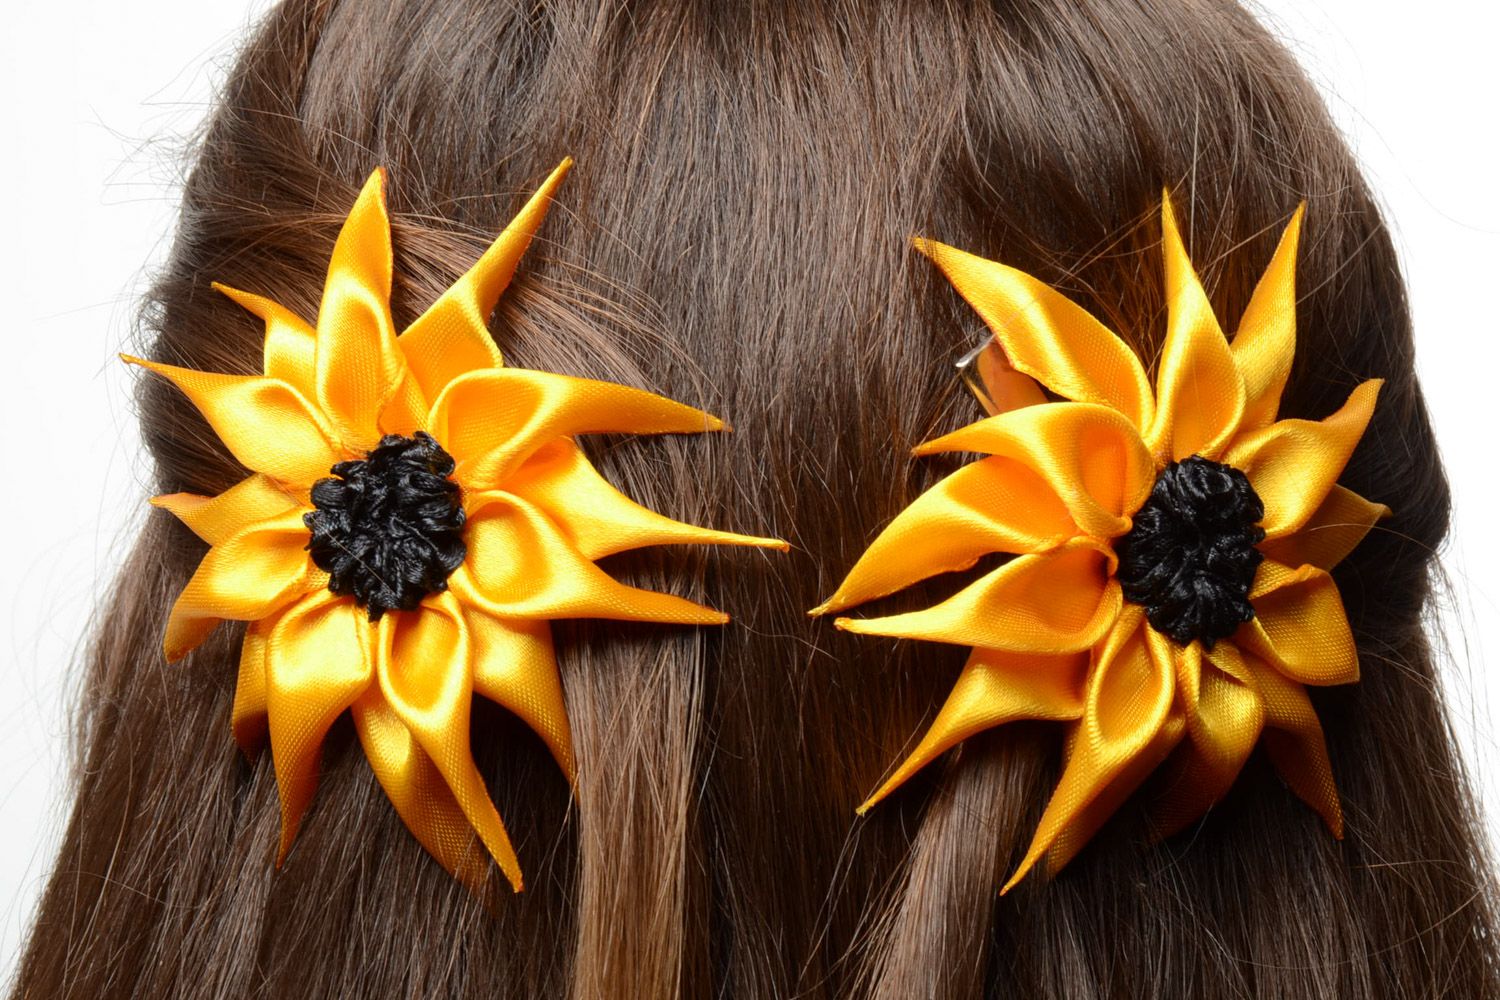 Яркие заколки для волос из атласных лент ручной работы желтые с черным 2 штуки фото 1